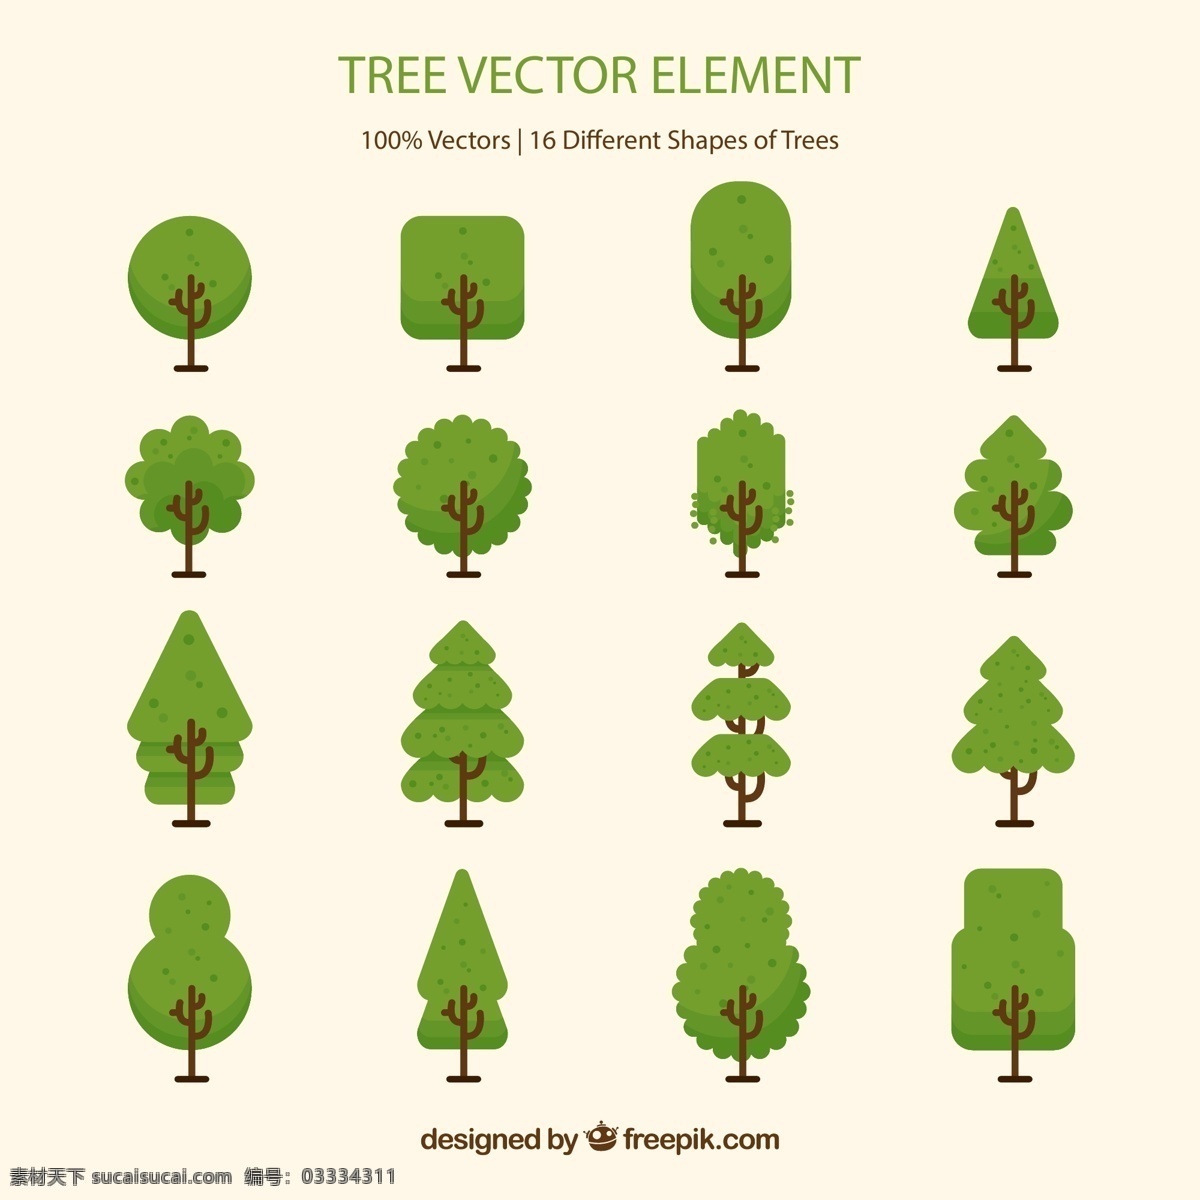 绿色 树木 矢量 植物 矢量图 格式 psd素材 高清图片